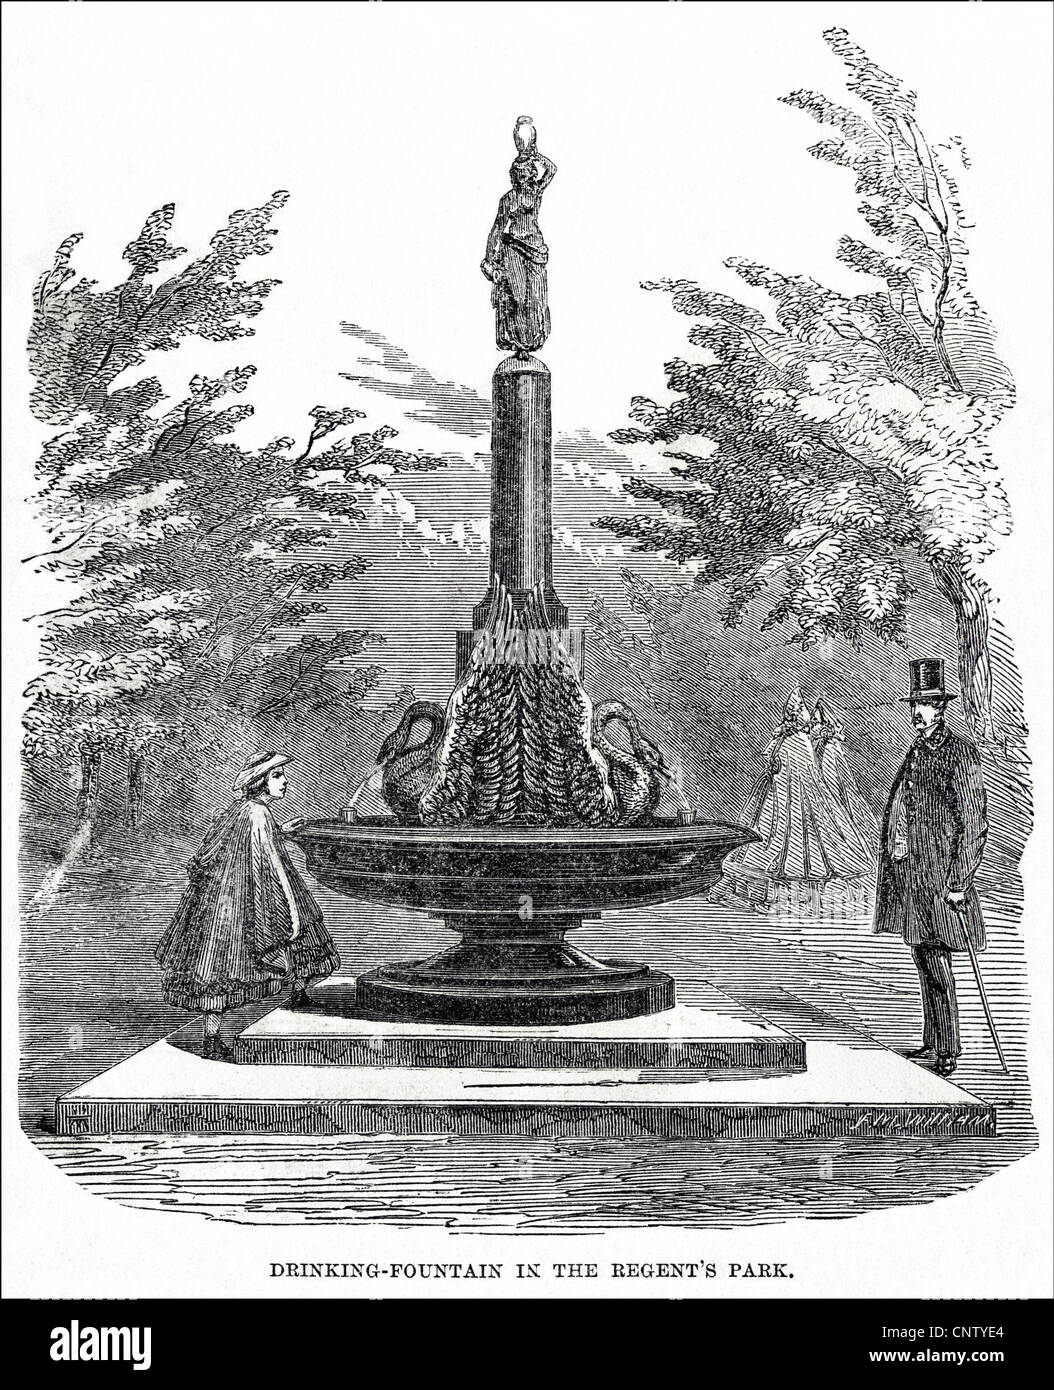 La nouvelle fontaine d'eau potable à Regent's Park. La gravure de l'époque victorienne en date du 12 juillet 1862 Banque D'Images